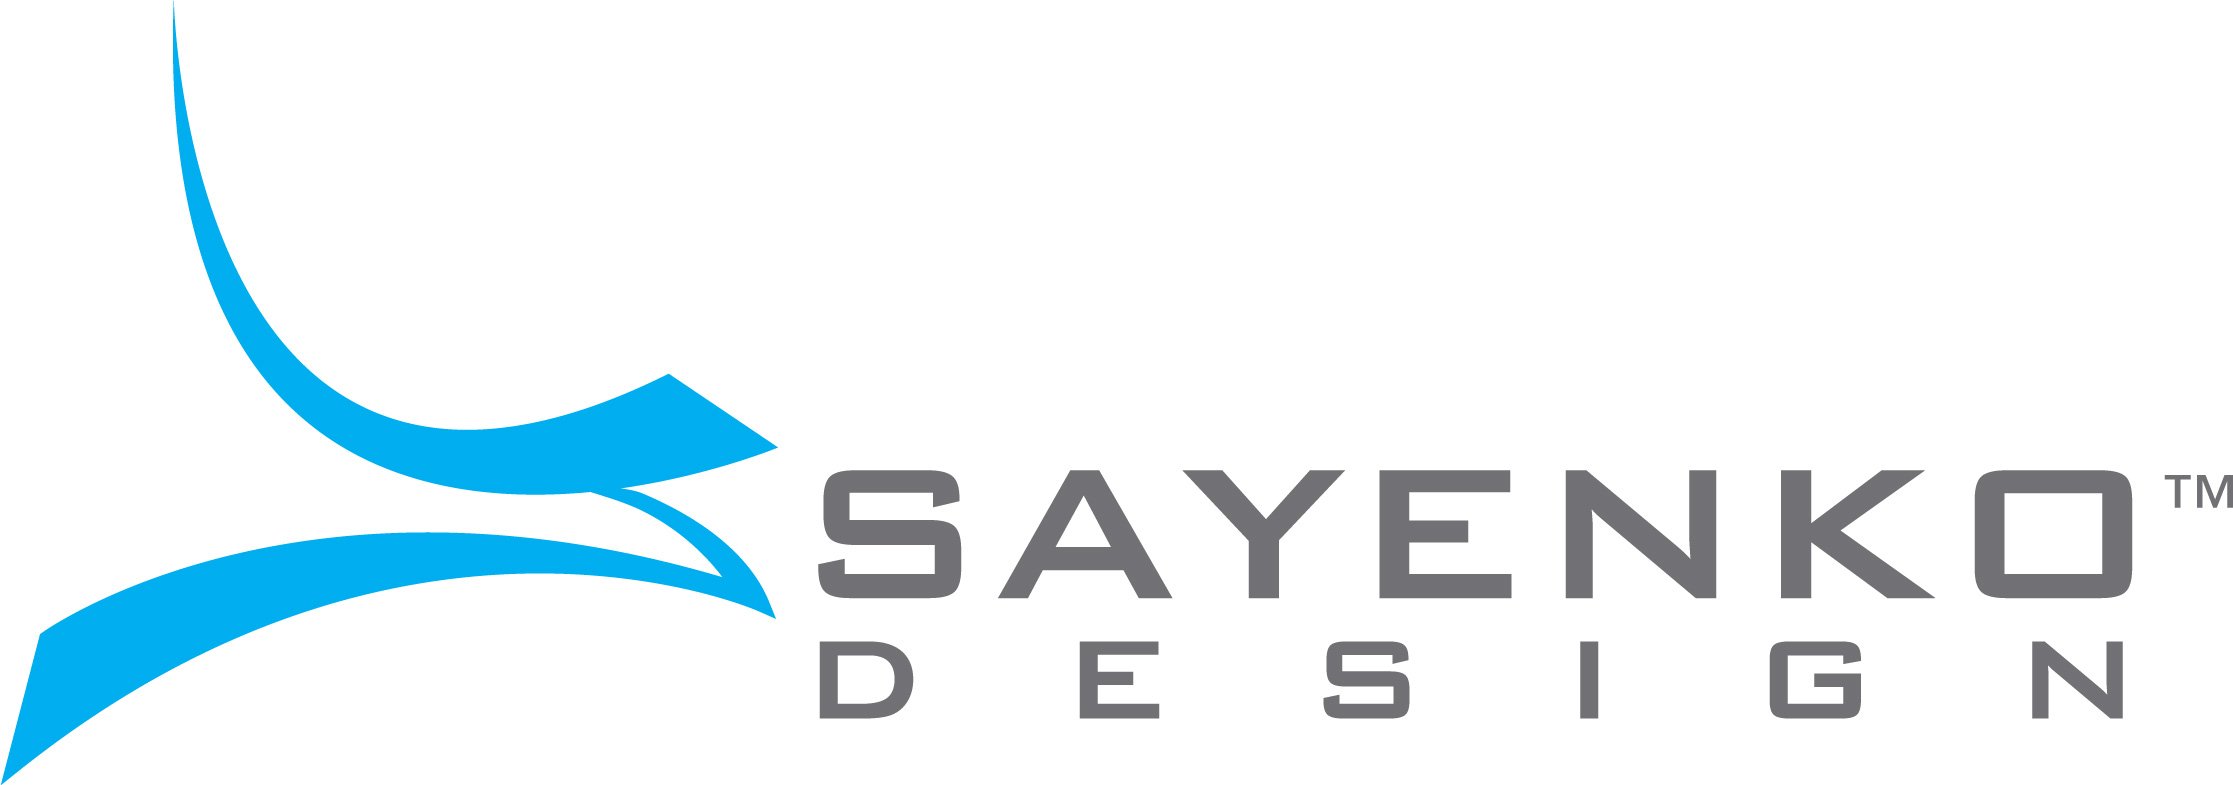 Best Website Design Firm Logo: Sayenko Design